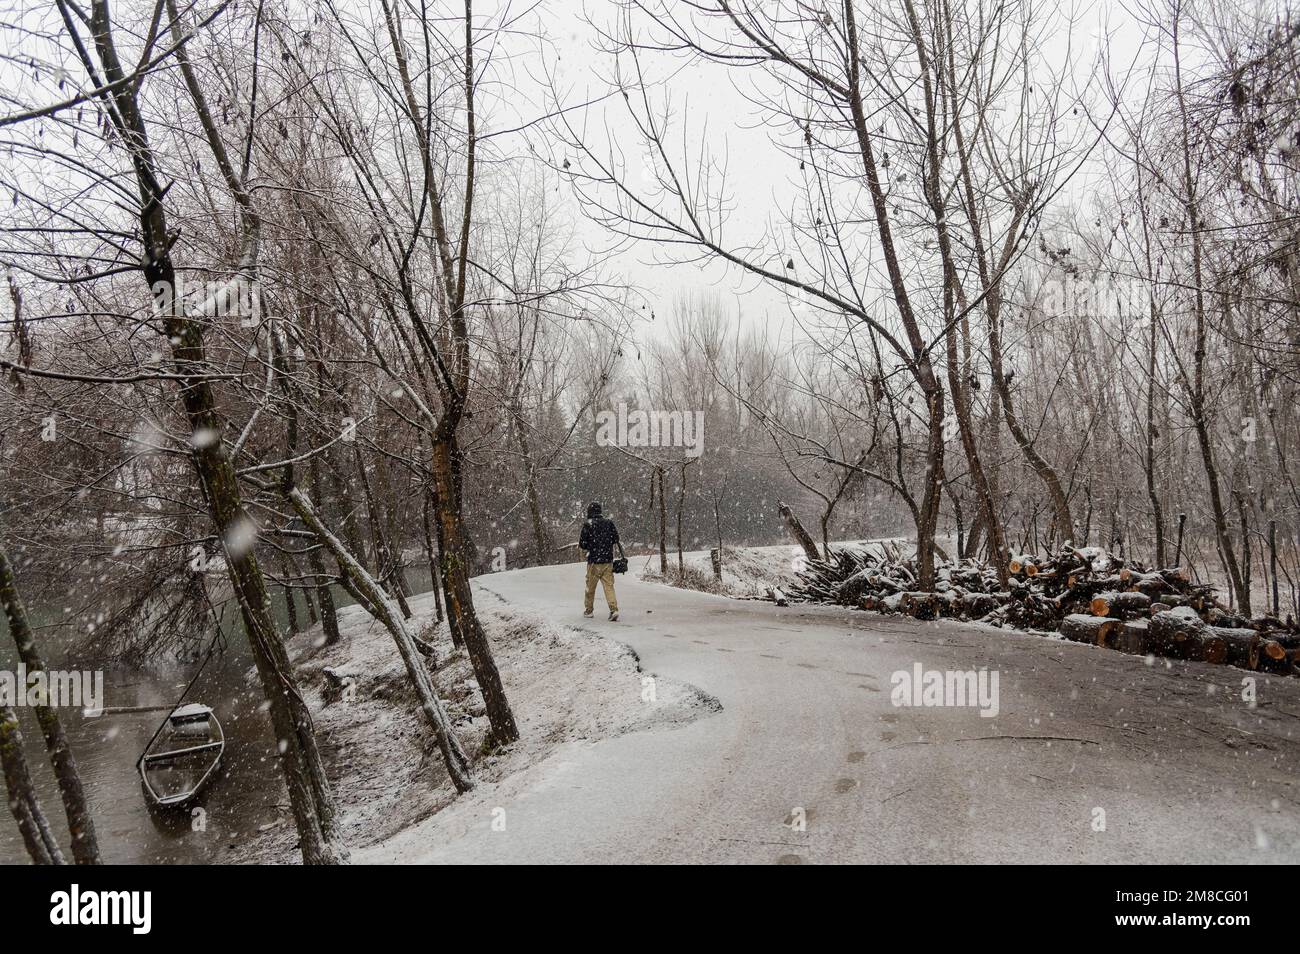 Un uomo cammina lungo una strada innevata durante le nevicate. Il Kashmir ha ricevuto nevicate fresche, con le cali più alte della valle che hanno ricevuto nevicate da moderate a pesanti e nevicate da leggere a moderate in pianura, causando una visibilità distruttiva. Questo ha influito sulle operazioni di volo insieme alla chiusura dell'autostrada nazionale Srinagar-Jammu. Foto Stock